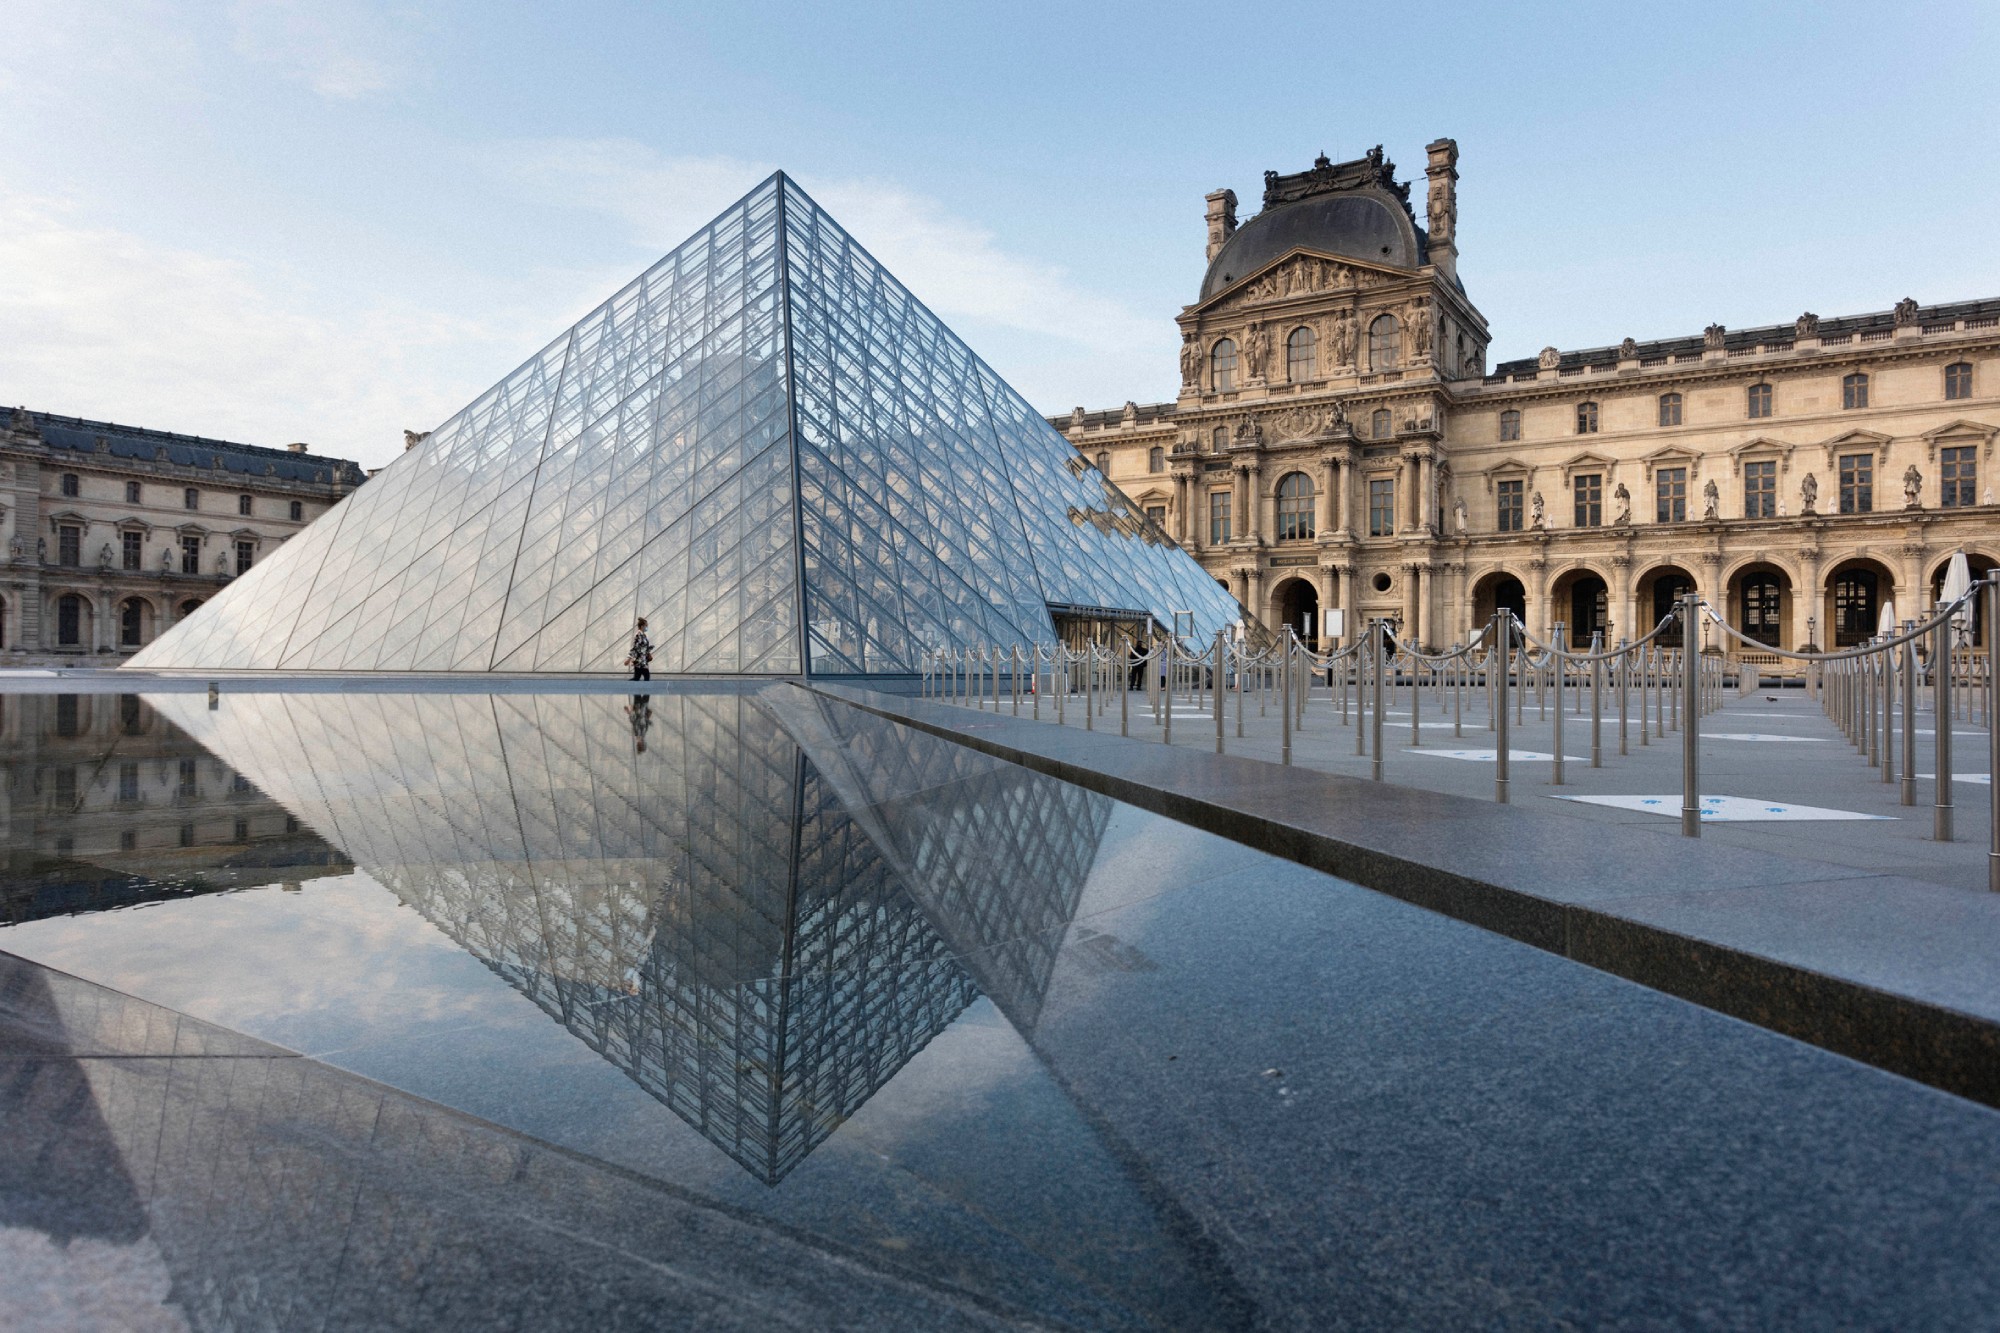 La Piramide del Louvre